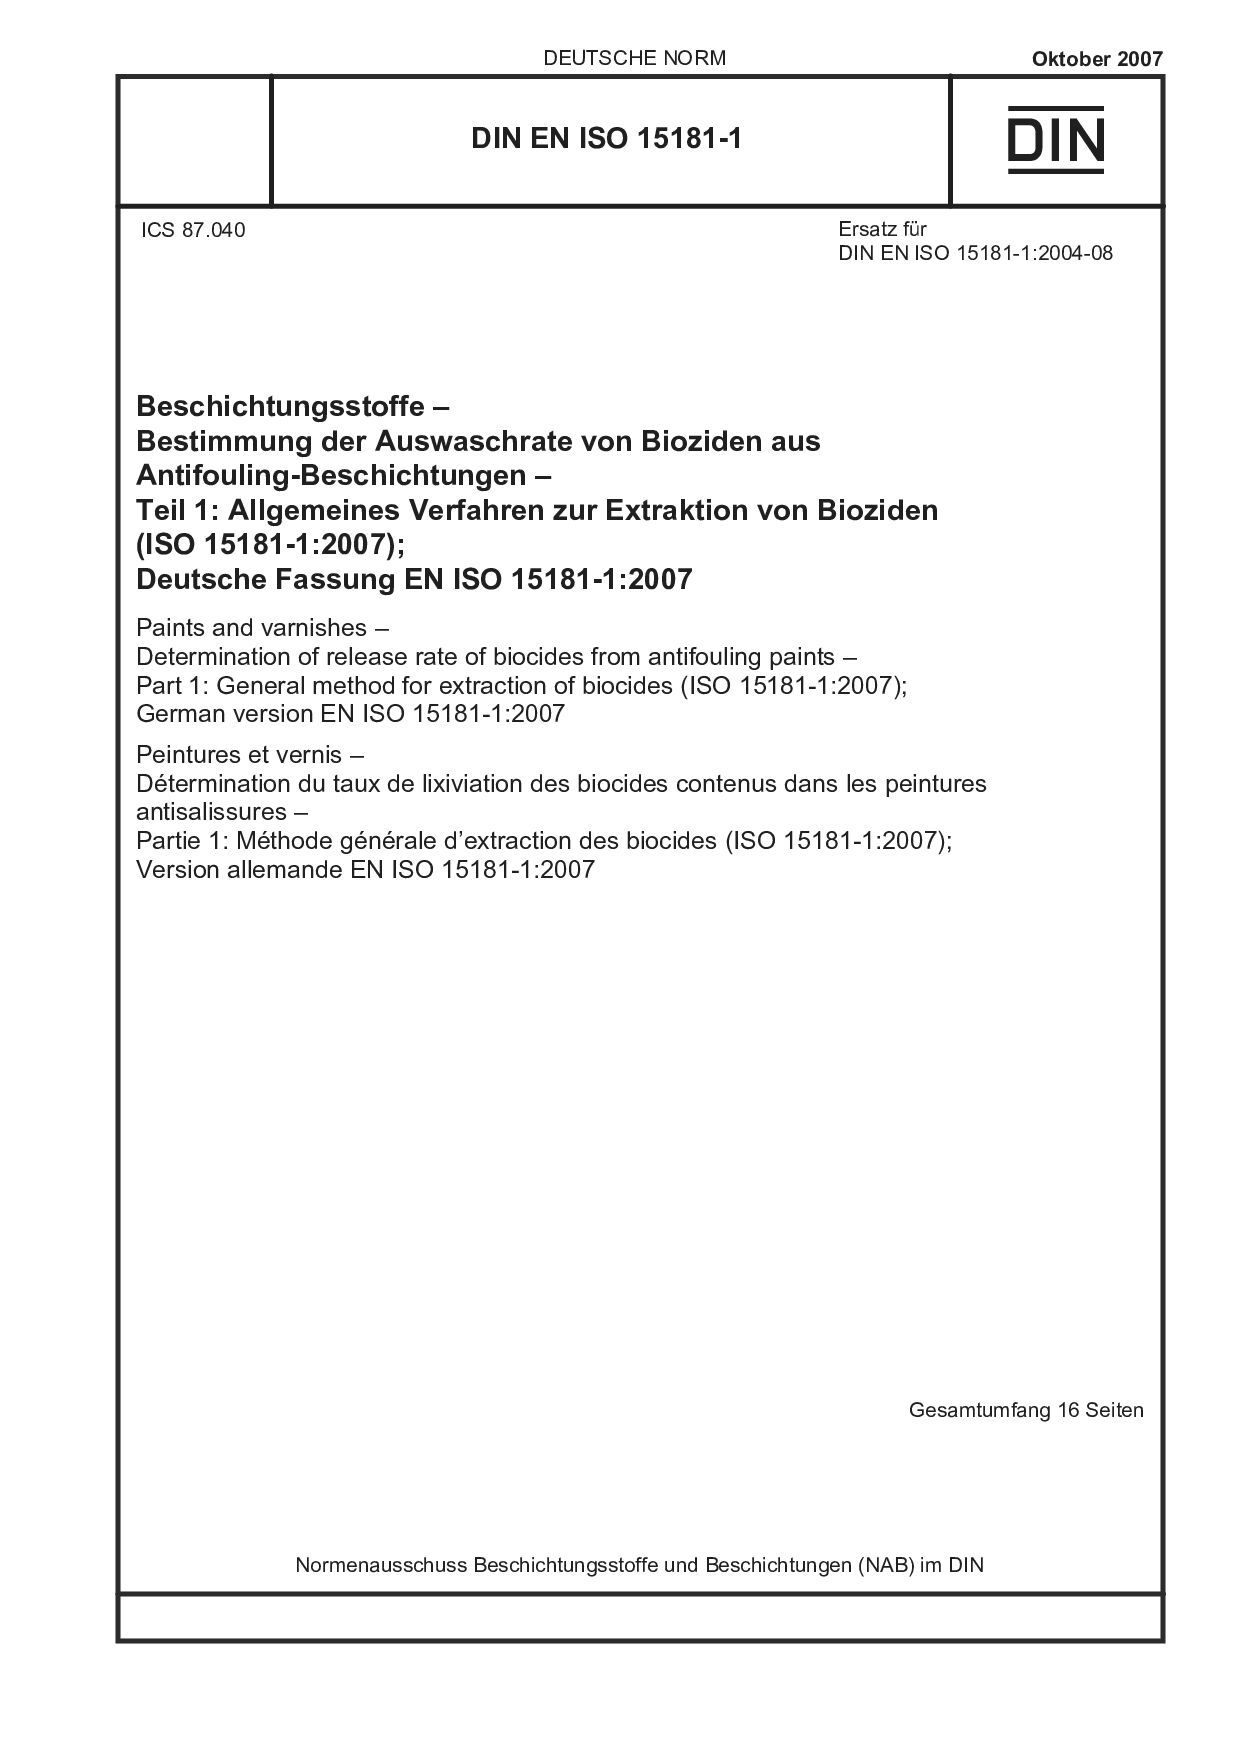 DIN EN ISO 15181-1:2007封面图